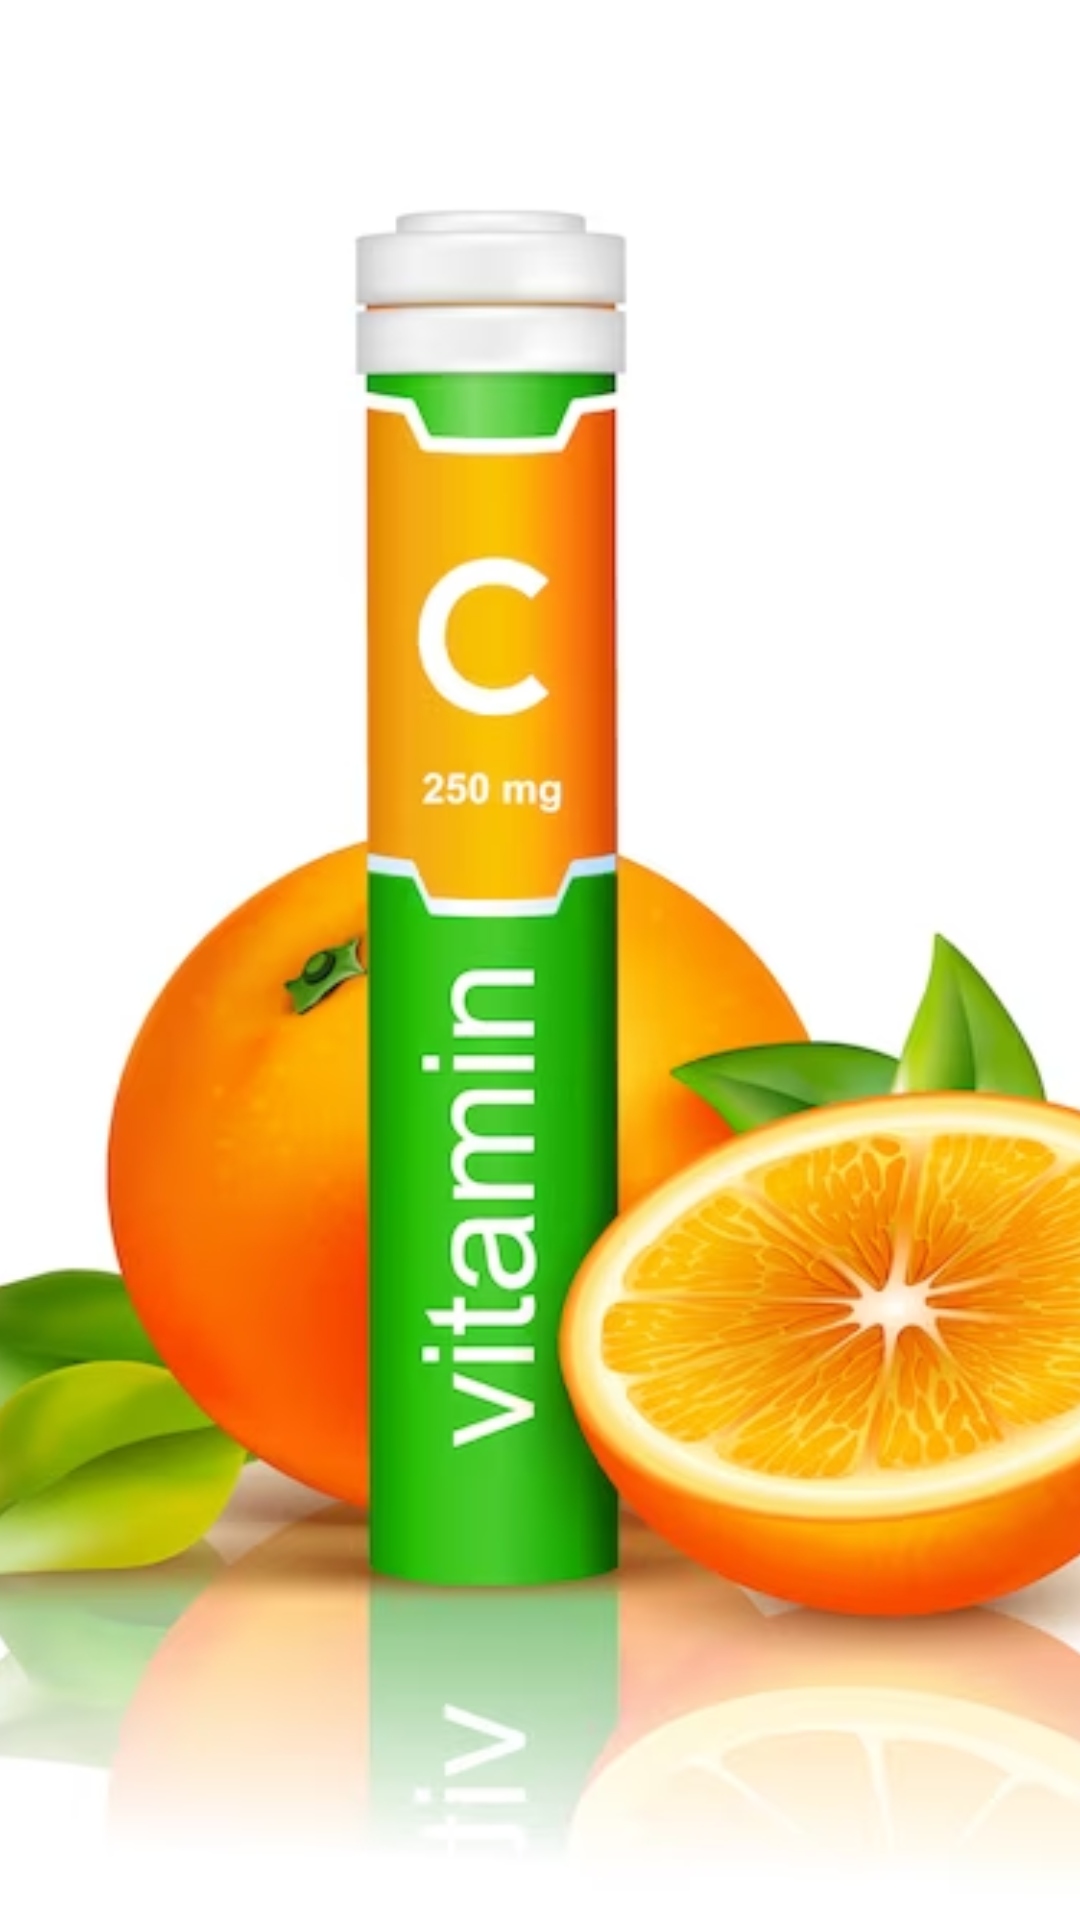 5 diseases caused by deficiency of vitamin C
